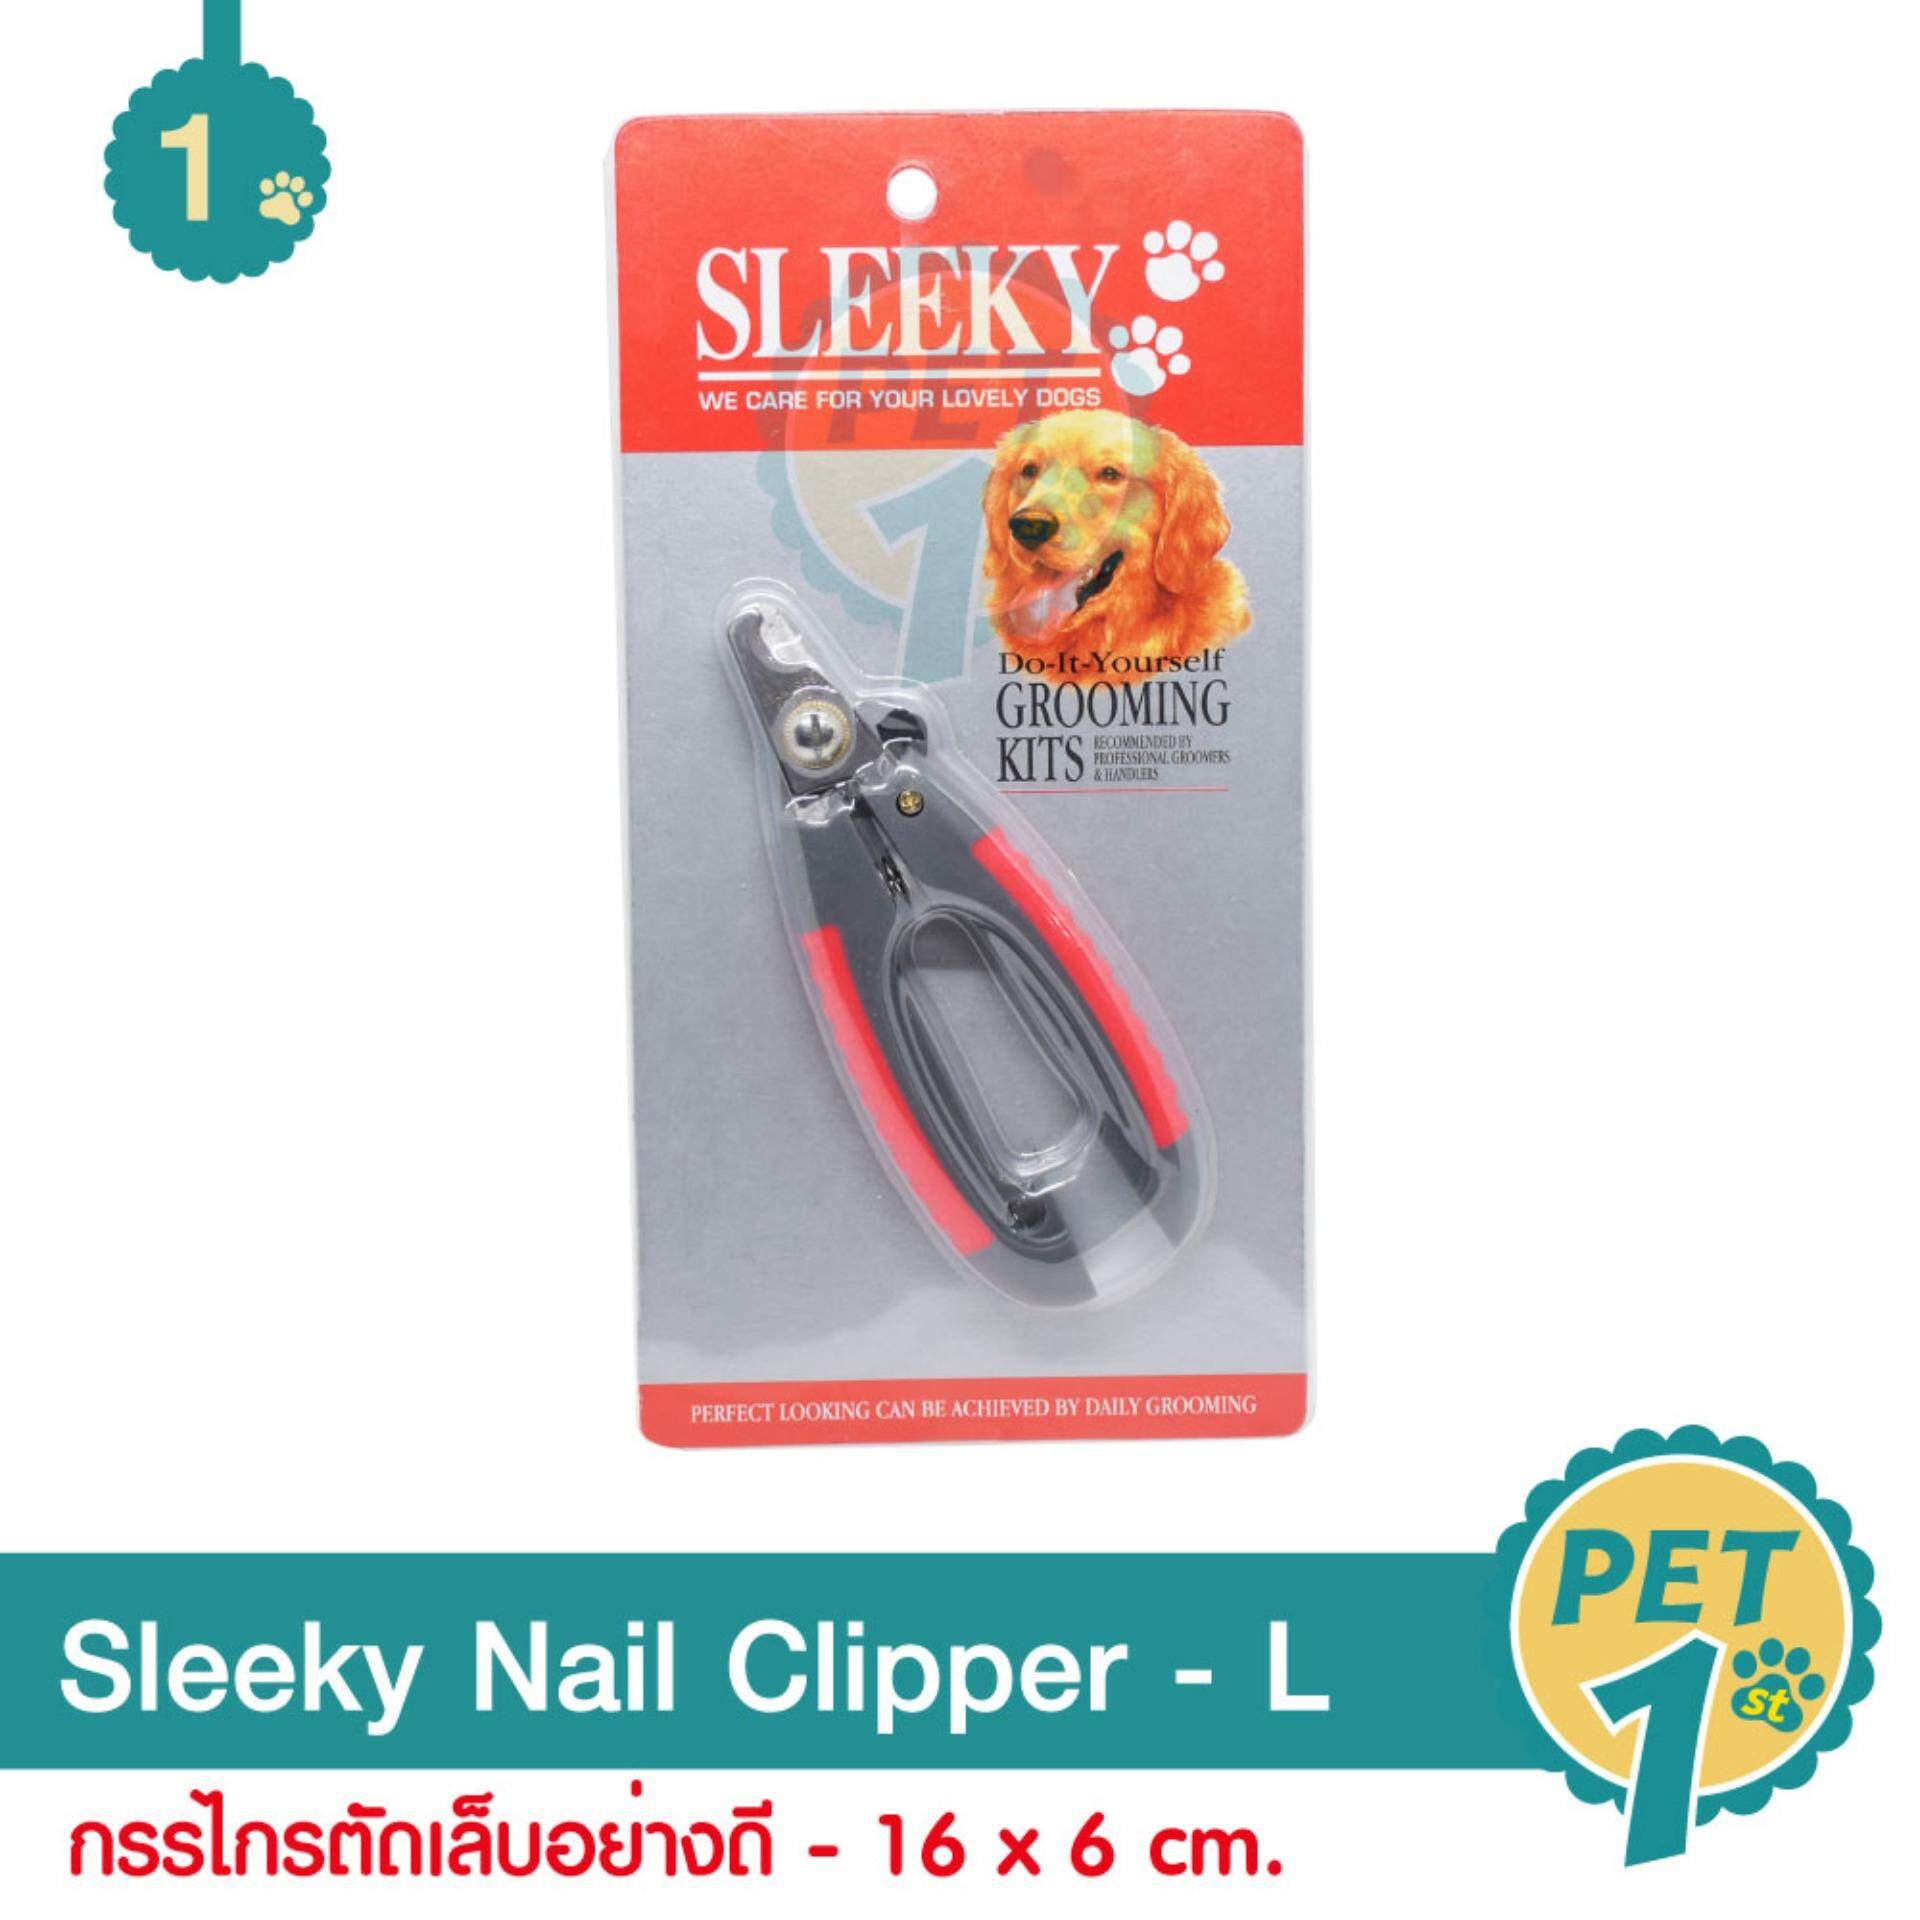 Sleeky Nail Clipper Size L กรรไกรตัดเล็บอย่างดี ตัดแม่นยำ ใช้งานง่าย สำหรับสุนัข แมว กระต่าย ขนาด 16 x 6 cm.